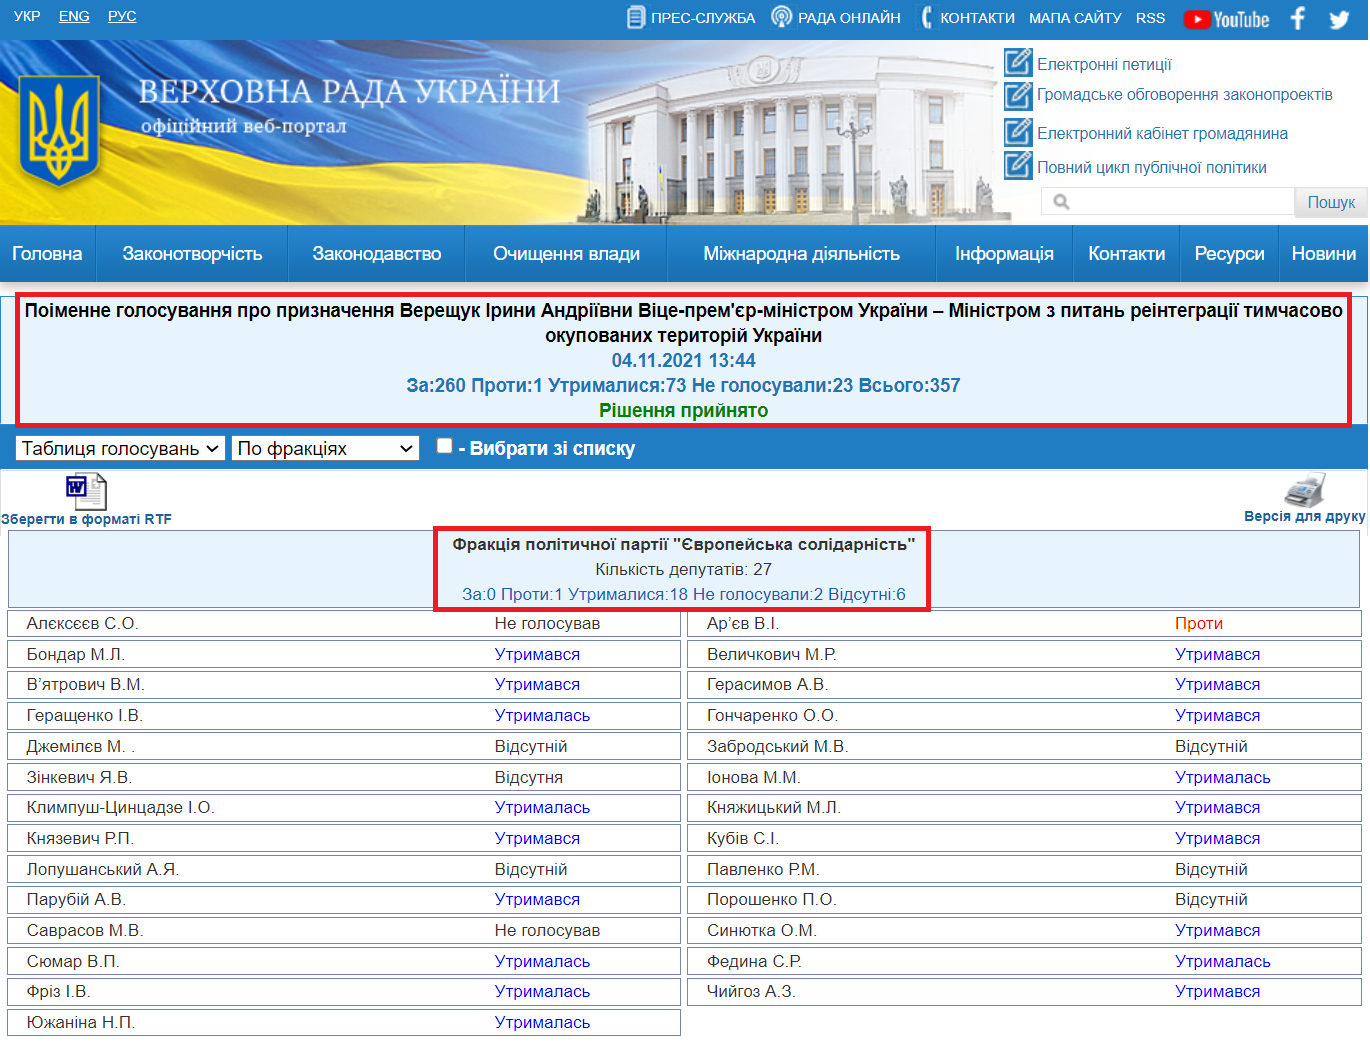 http://w1.c1.rada.gov.ua/pls/radan_gs09/ns_golos?g_id=16722